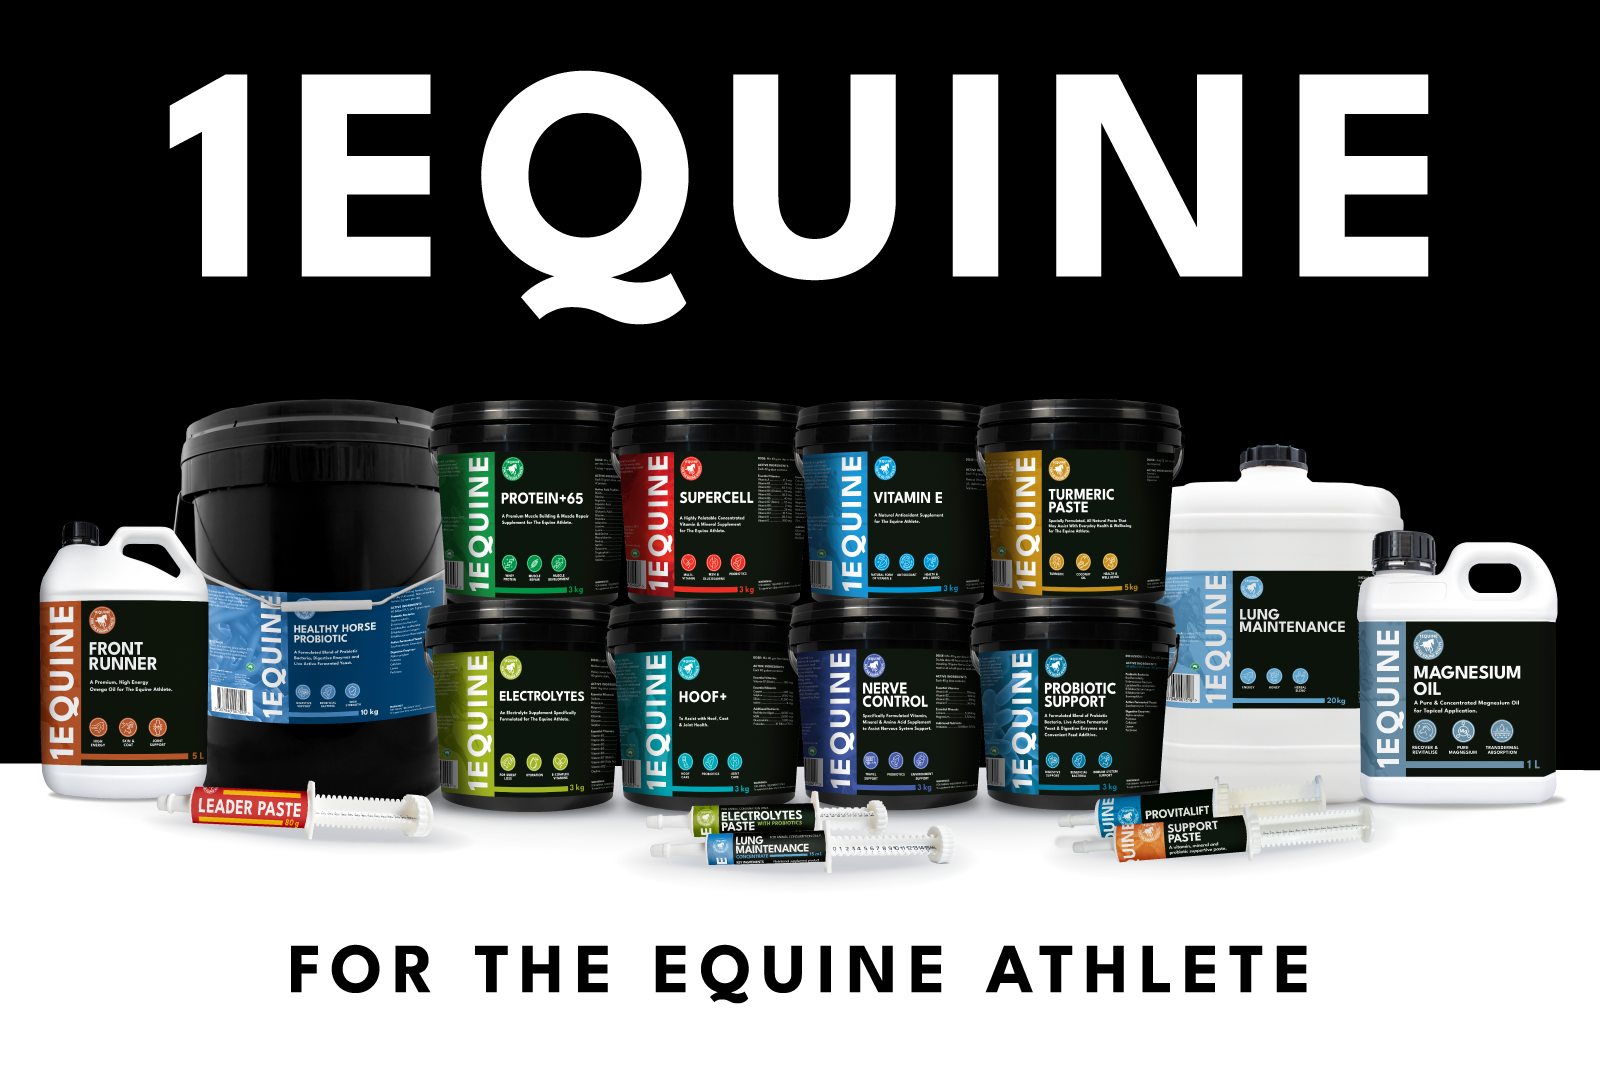 1EQUINE full range - For the Equine Athlete